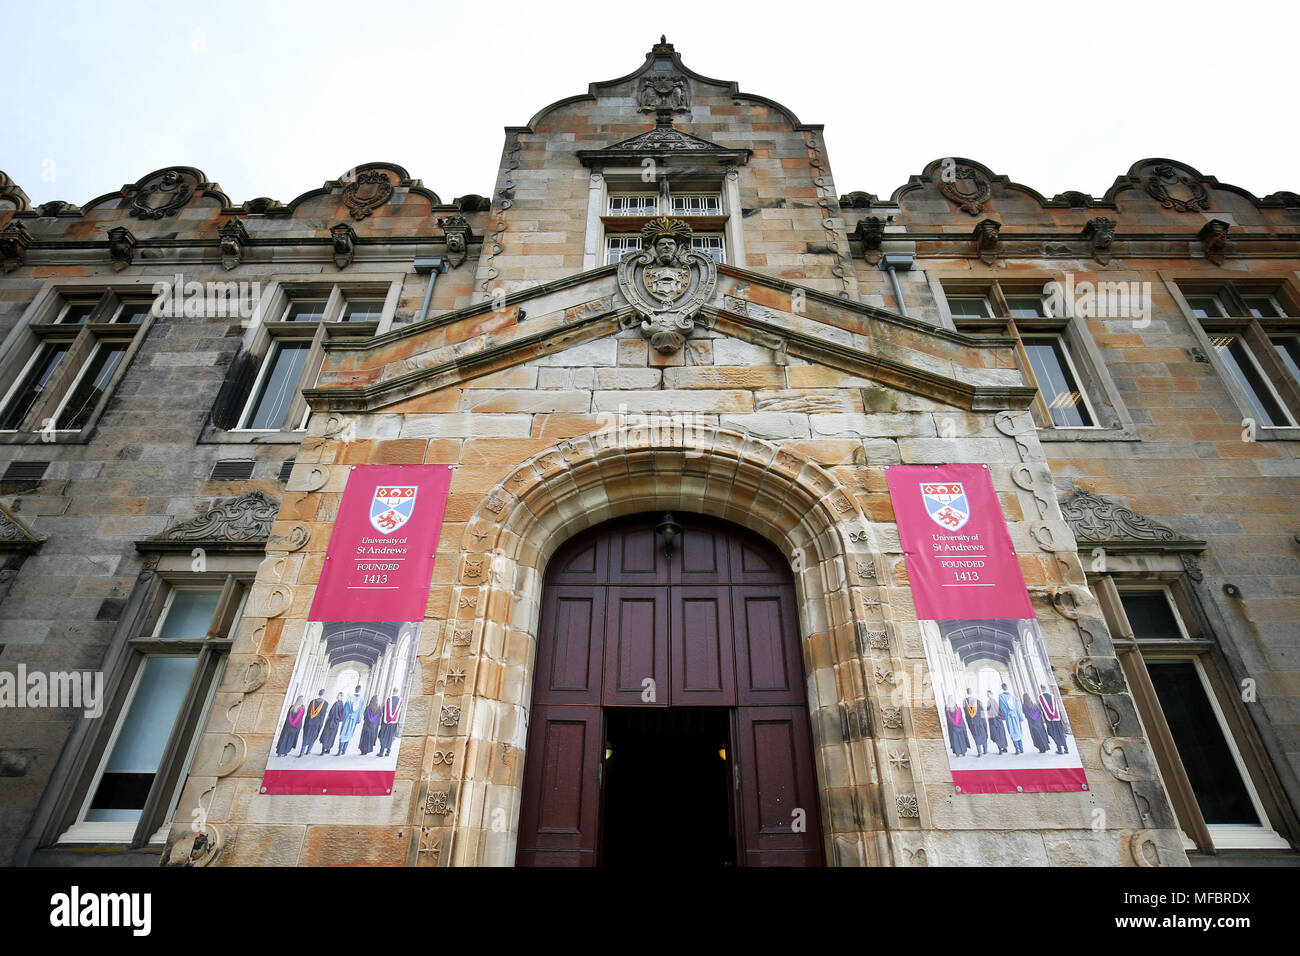 Eine allgemeine Ansicht der Eingang zur unteren und oberen College Halls an der Universität von St. Andrews. Der Universität von St Andrews in Schottland und ist eine der fünf führenden Universitäten in Großbritannien nach der neuen Liga Tabelle Komplette's University Guide. Stockfoto